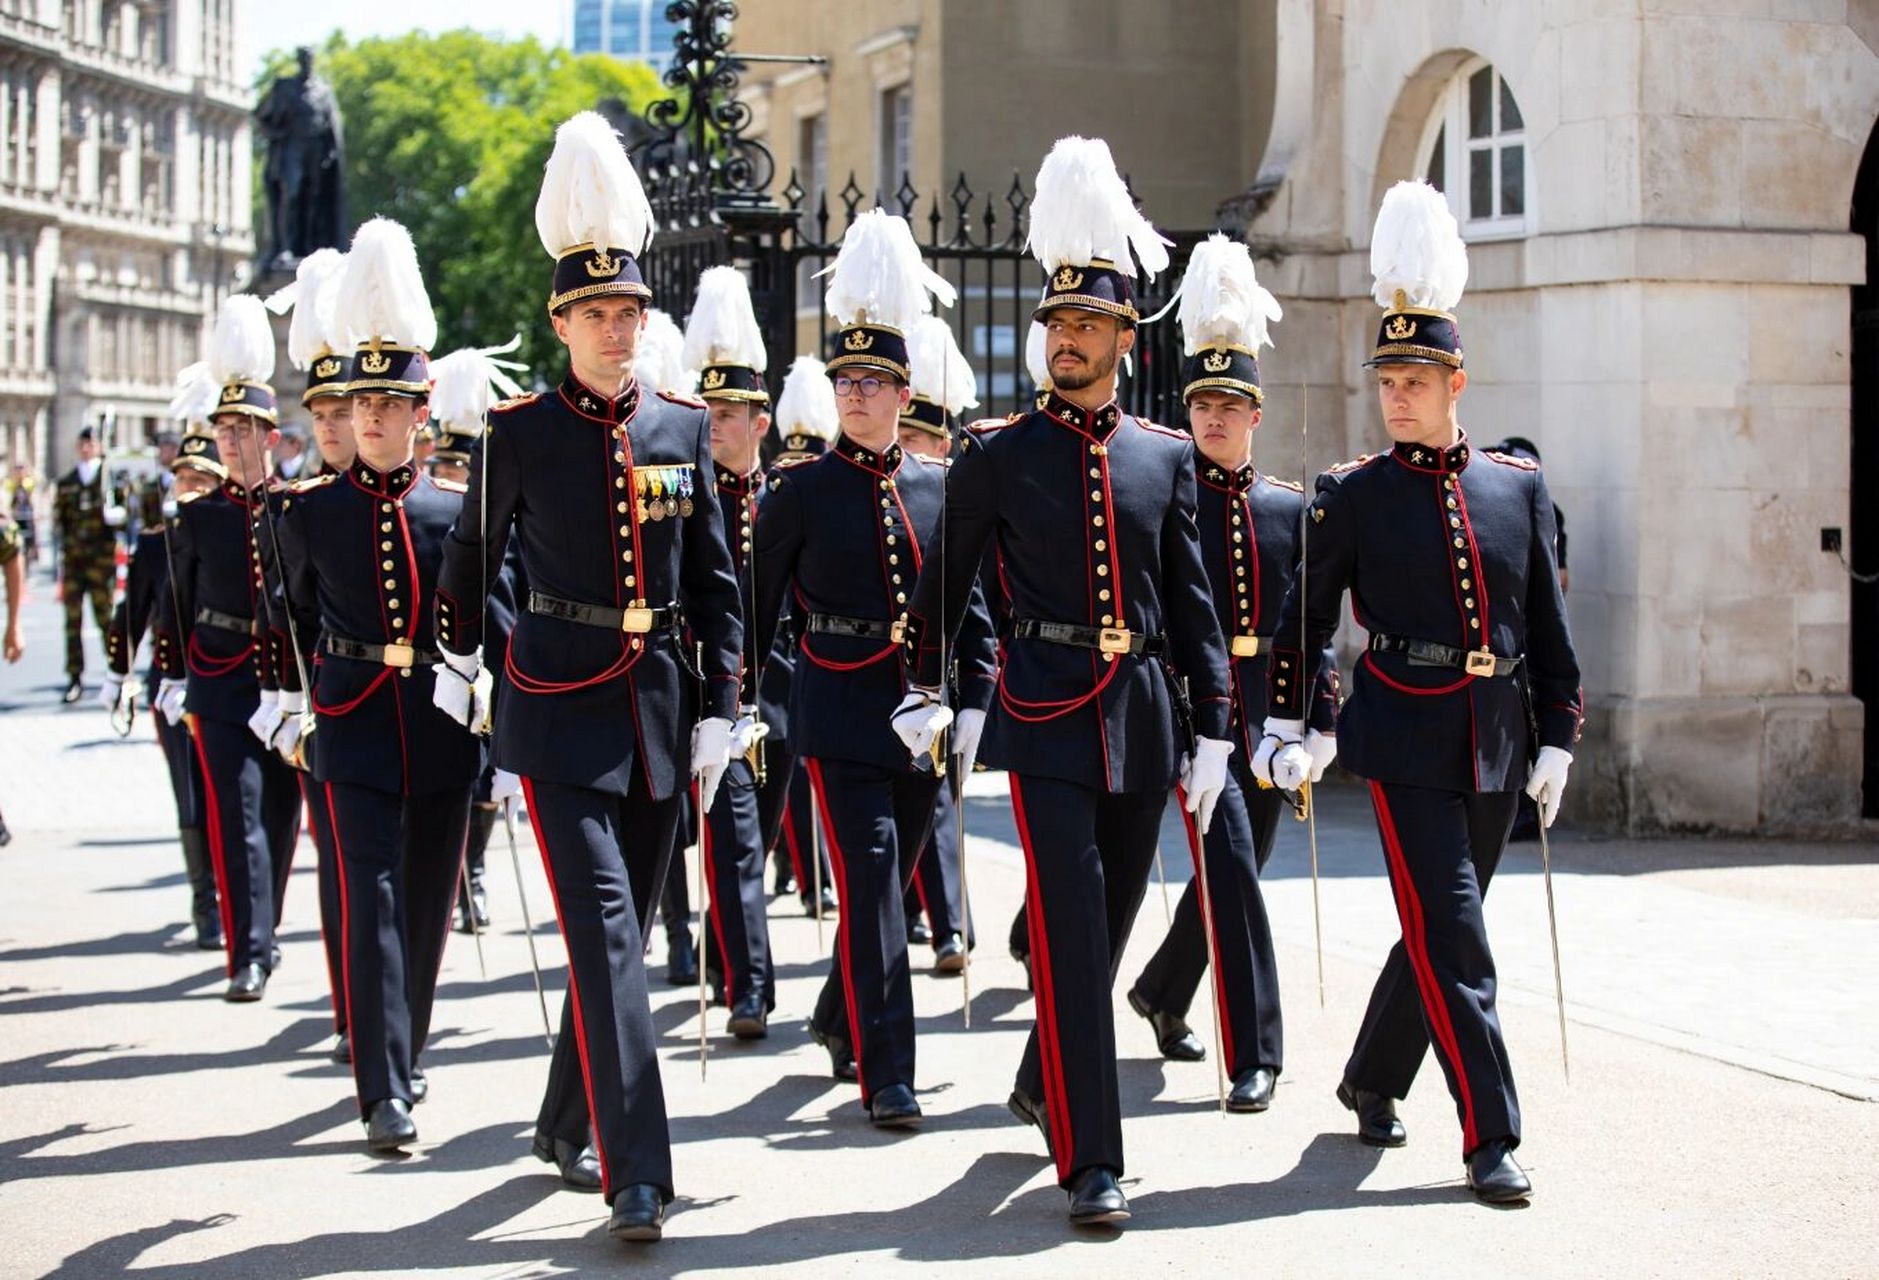 比利时公主的军装照 7月21日比利时国庆节,身着军礼服的比利时公主